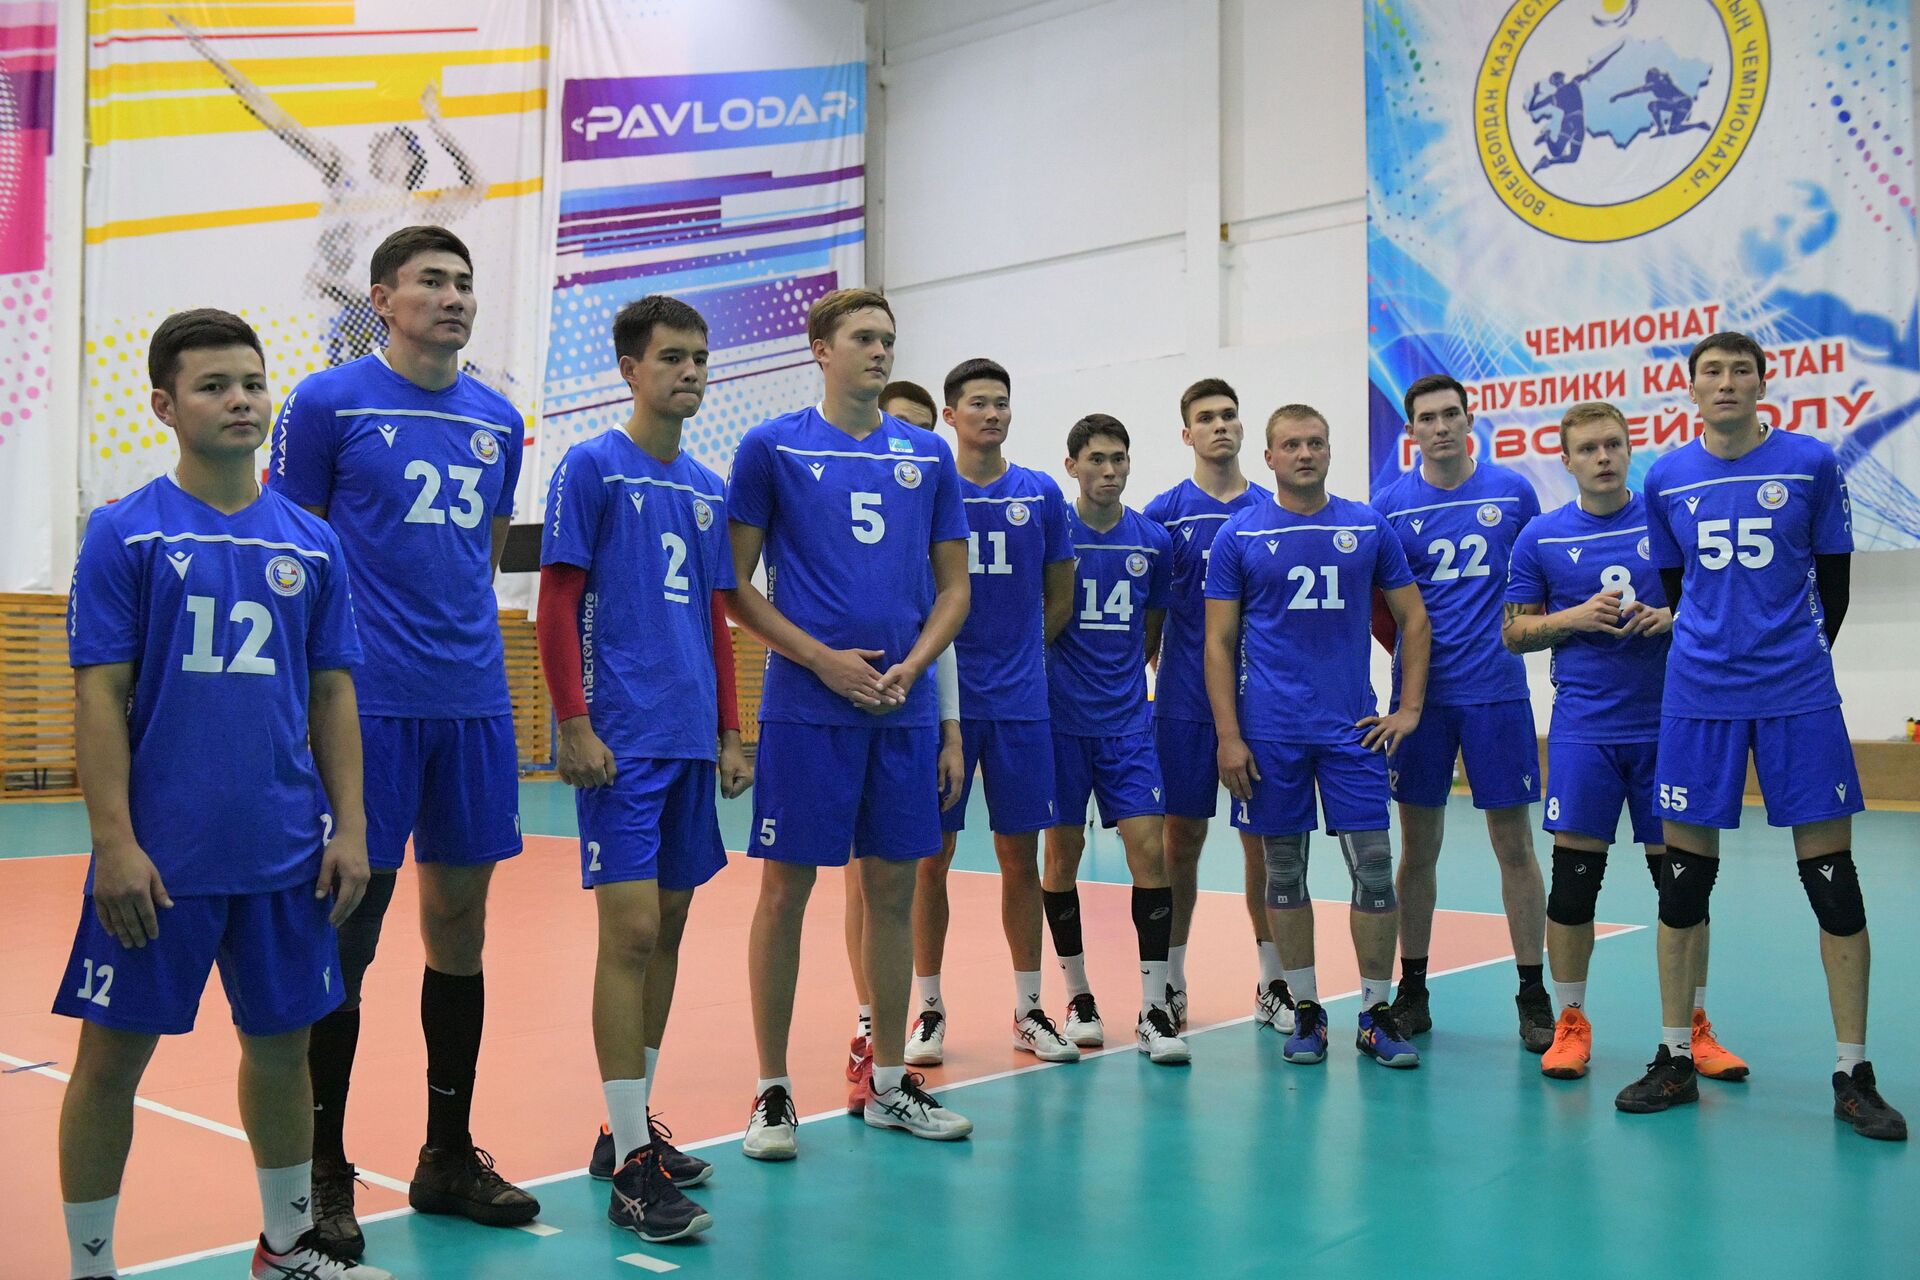 Павлодарские волейбольные клубы заявили в состав только местных спортсменов - Sputnik Казахстан, 1920, 17.09.2021